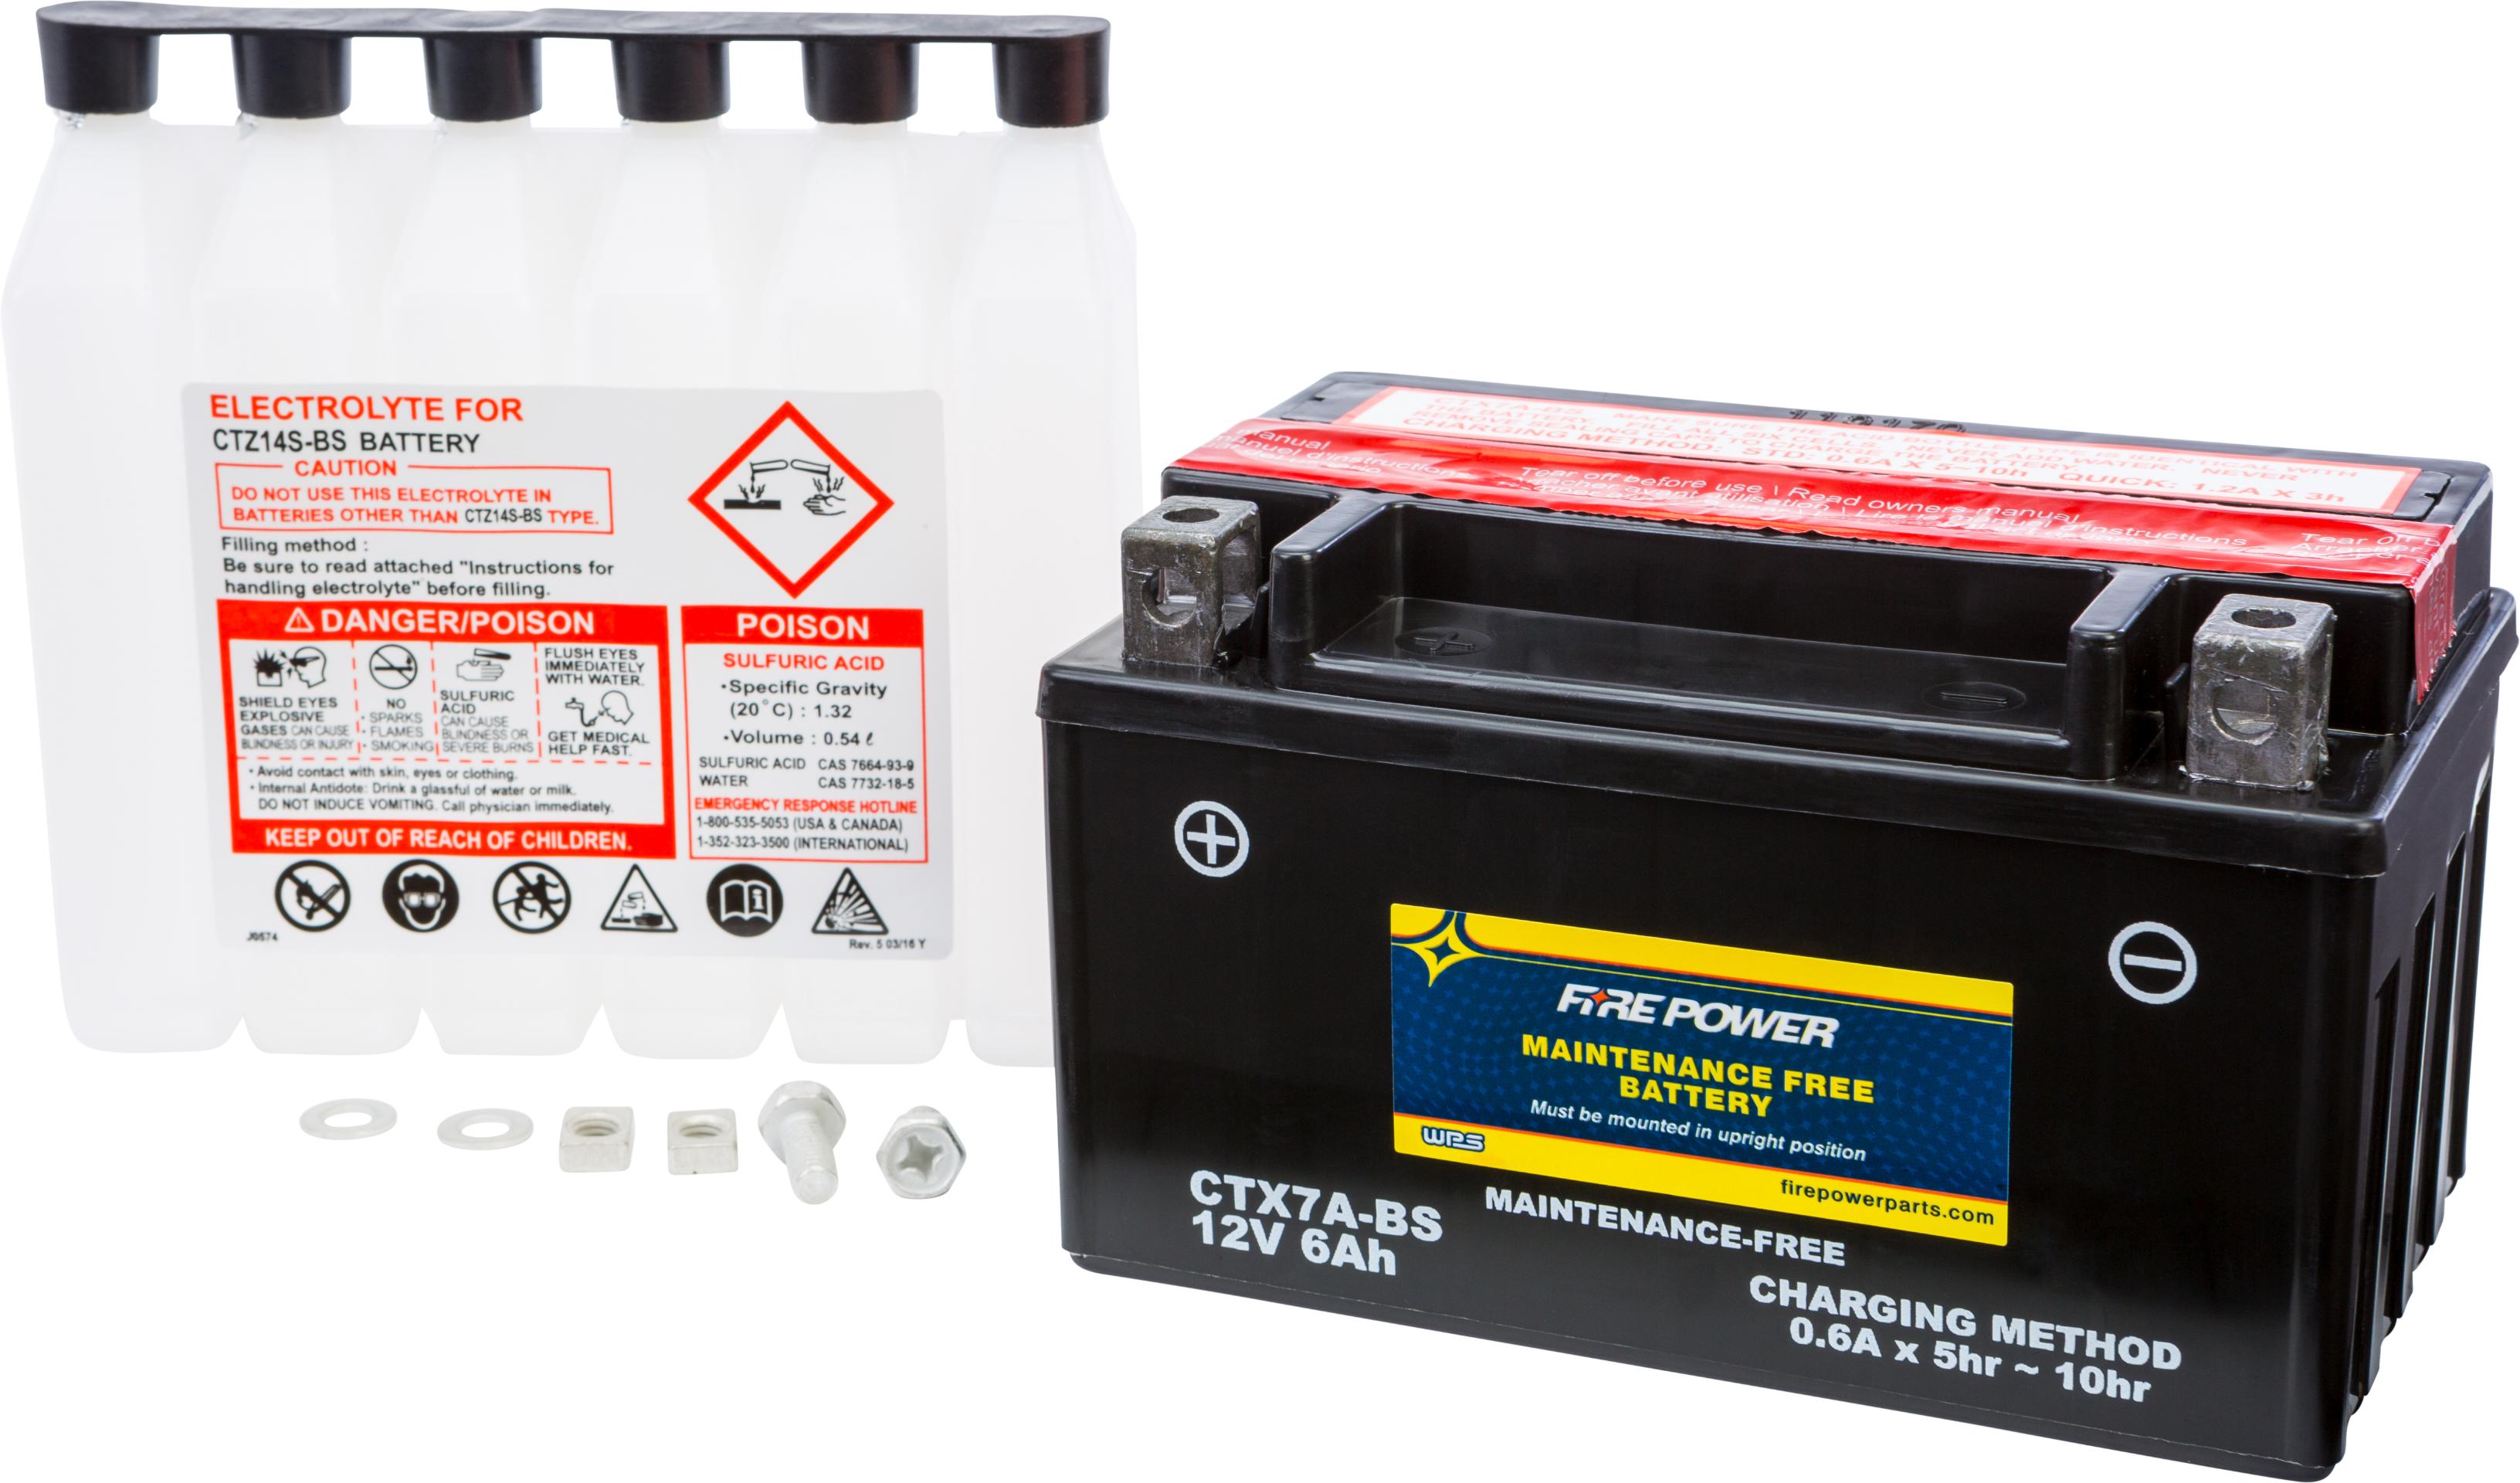 Fire Power - Battery Ctx7a-bs Maintenance Free - CTX7A-BS